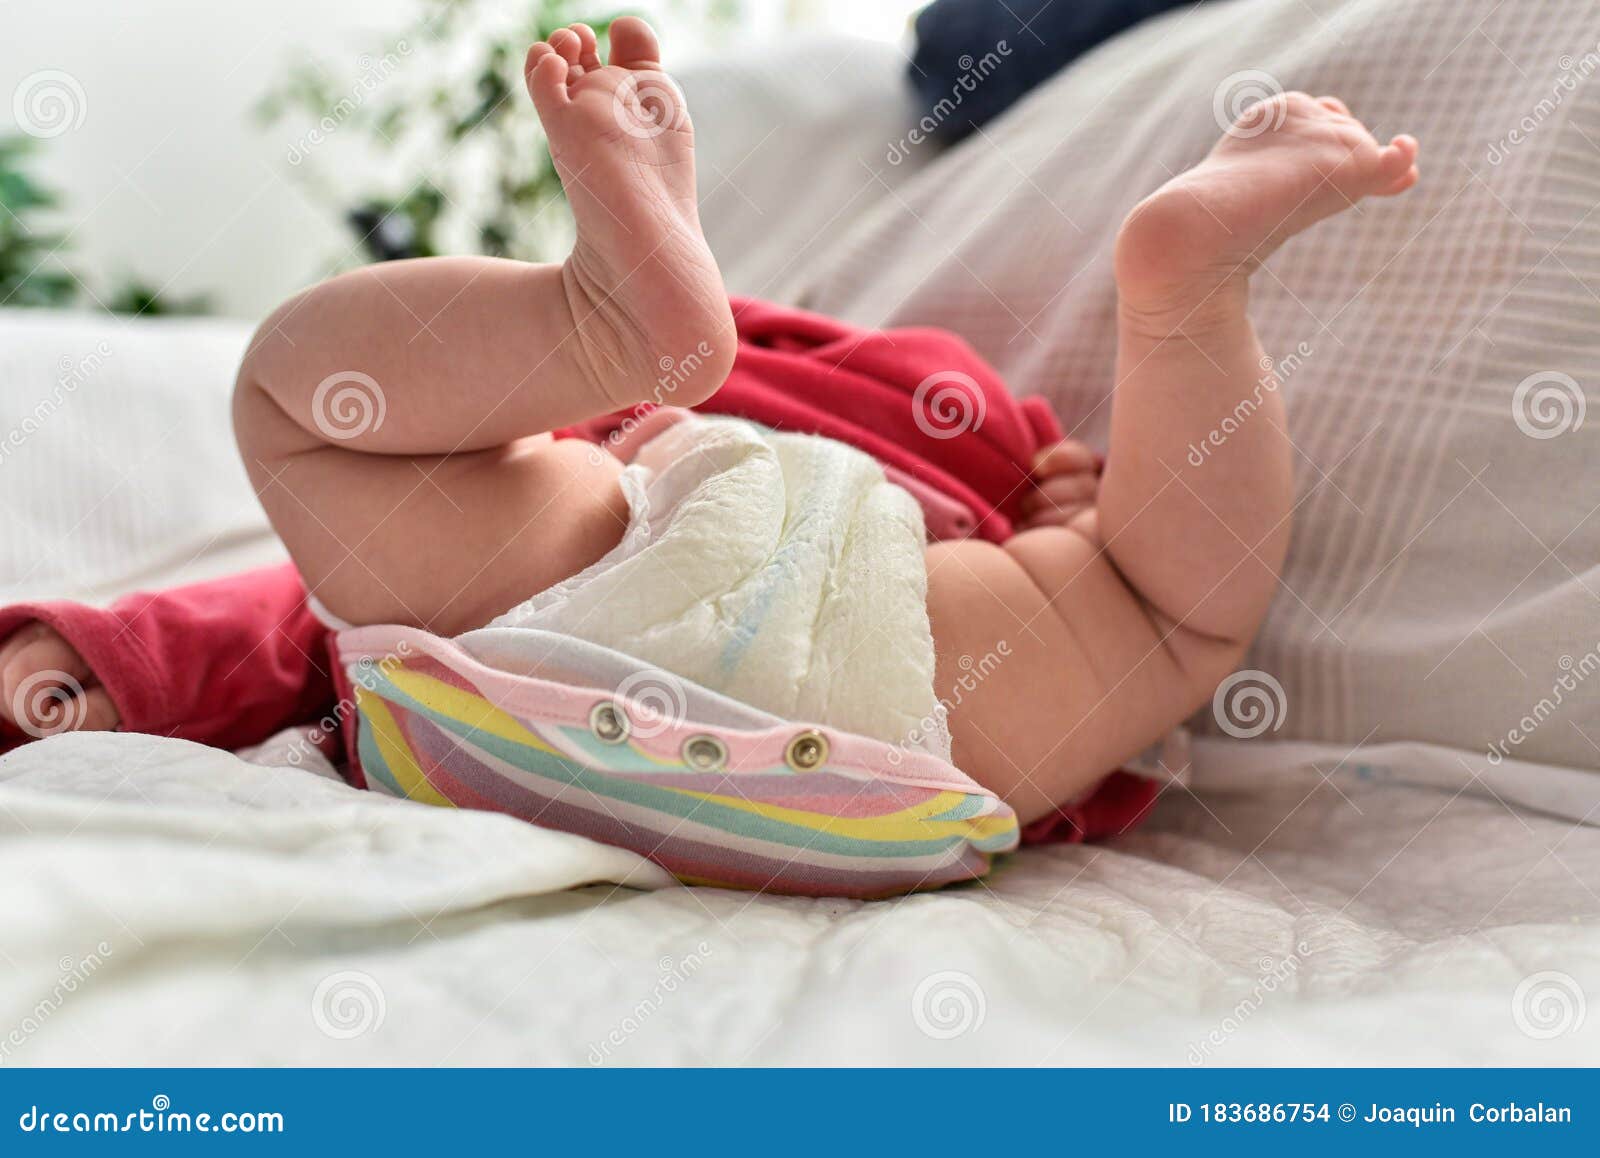 纯棉纱布尿布 婴幼儿花生型可洗尿片 婴儿尿布10层 纱布密度88*64-阿里巴巴